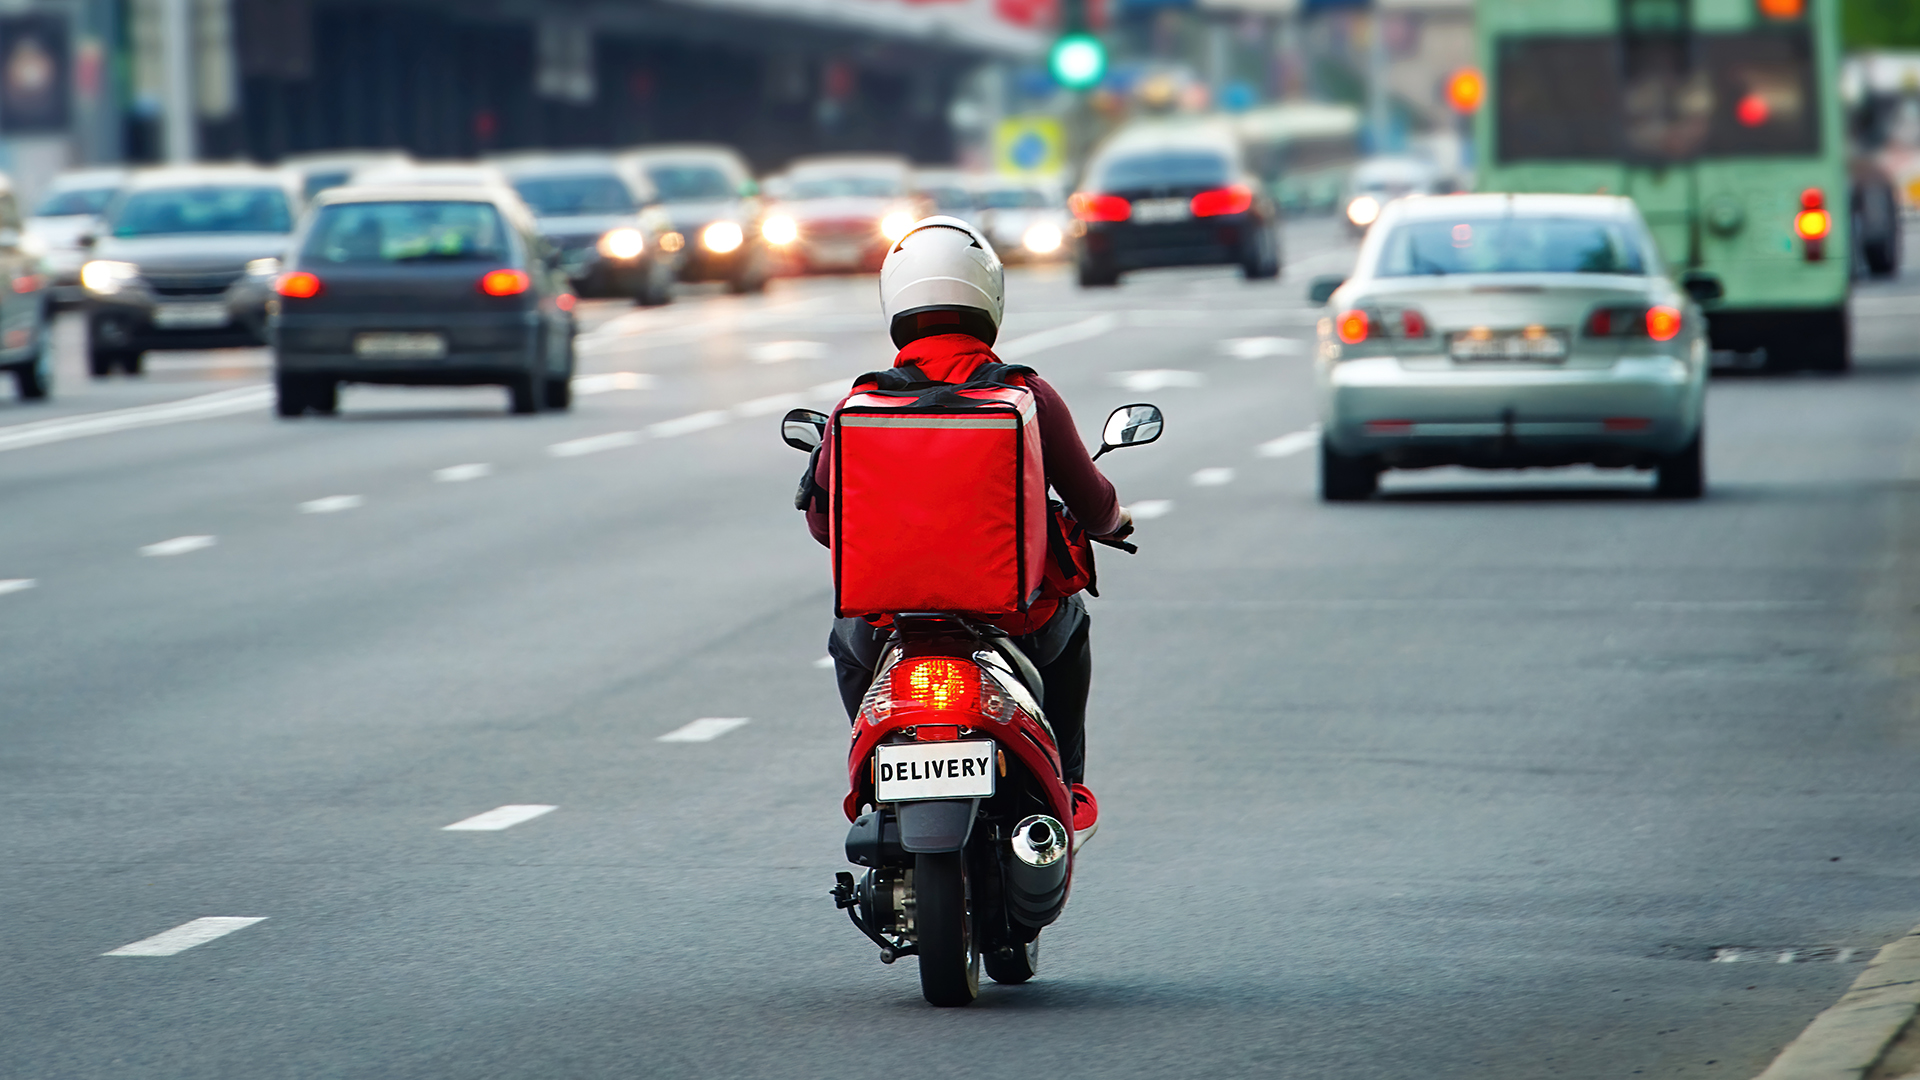 Mais que um veículo, as motos são importantes ferramentas de trabalho para os entregadores. / Foto: ShutterStock